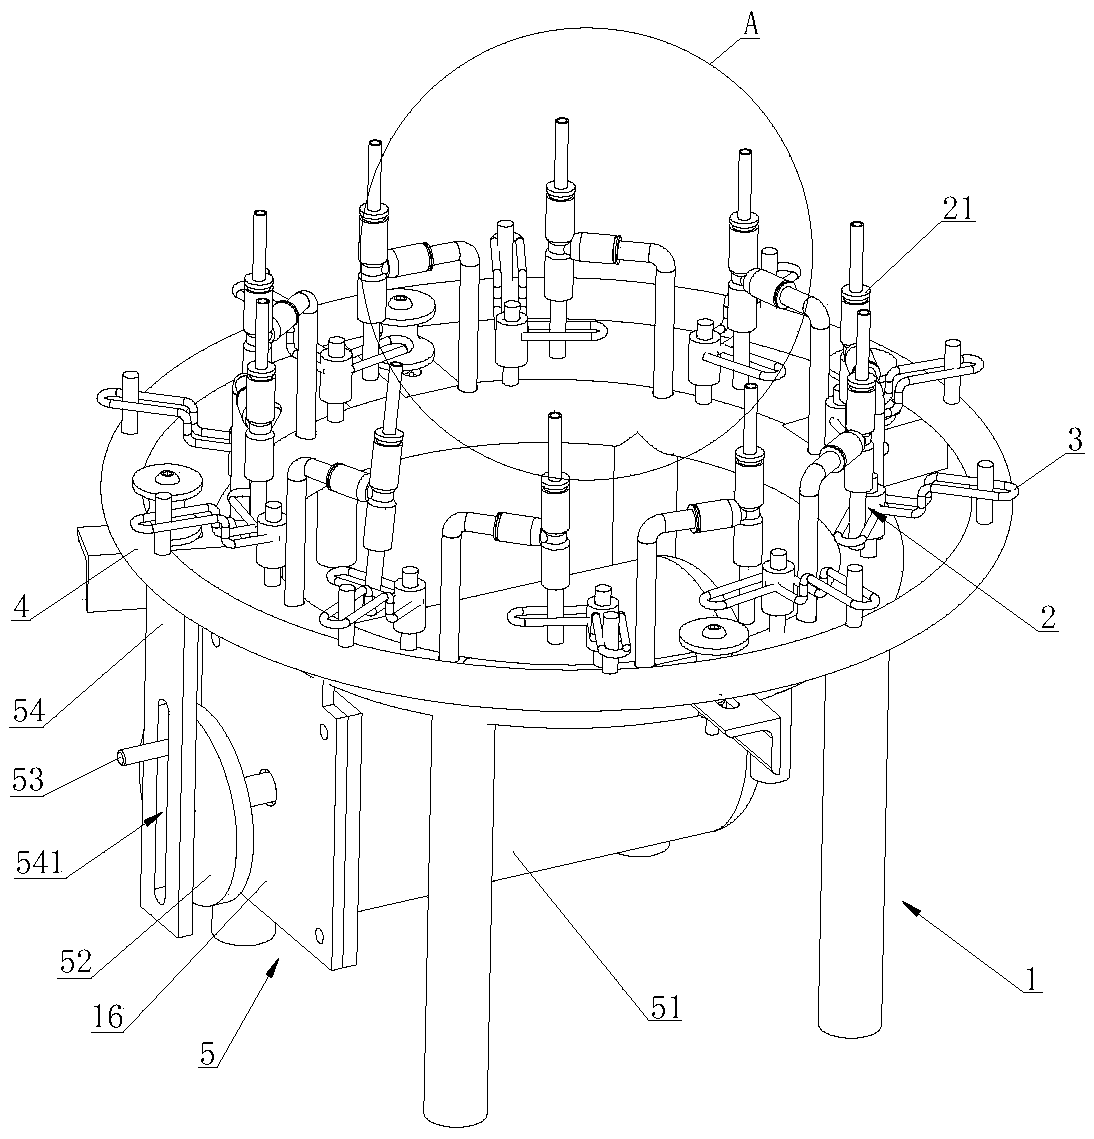 A circular fountain device